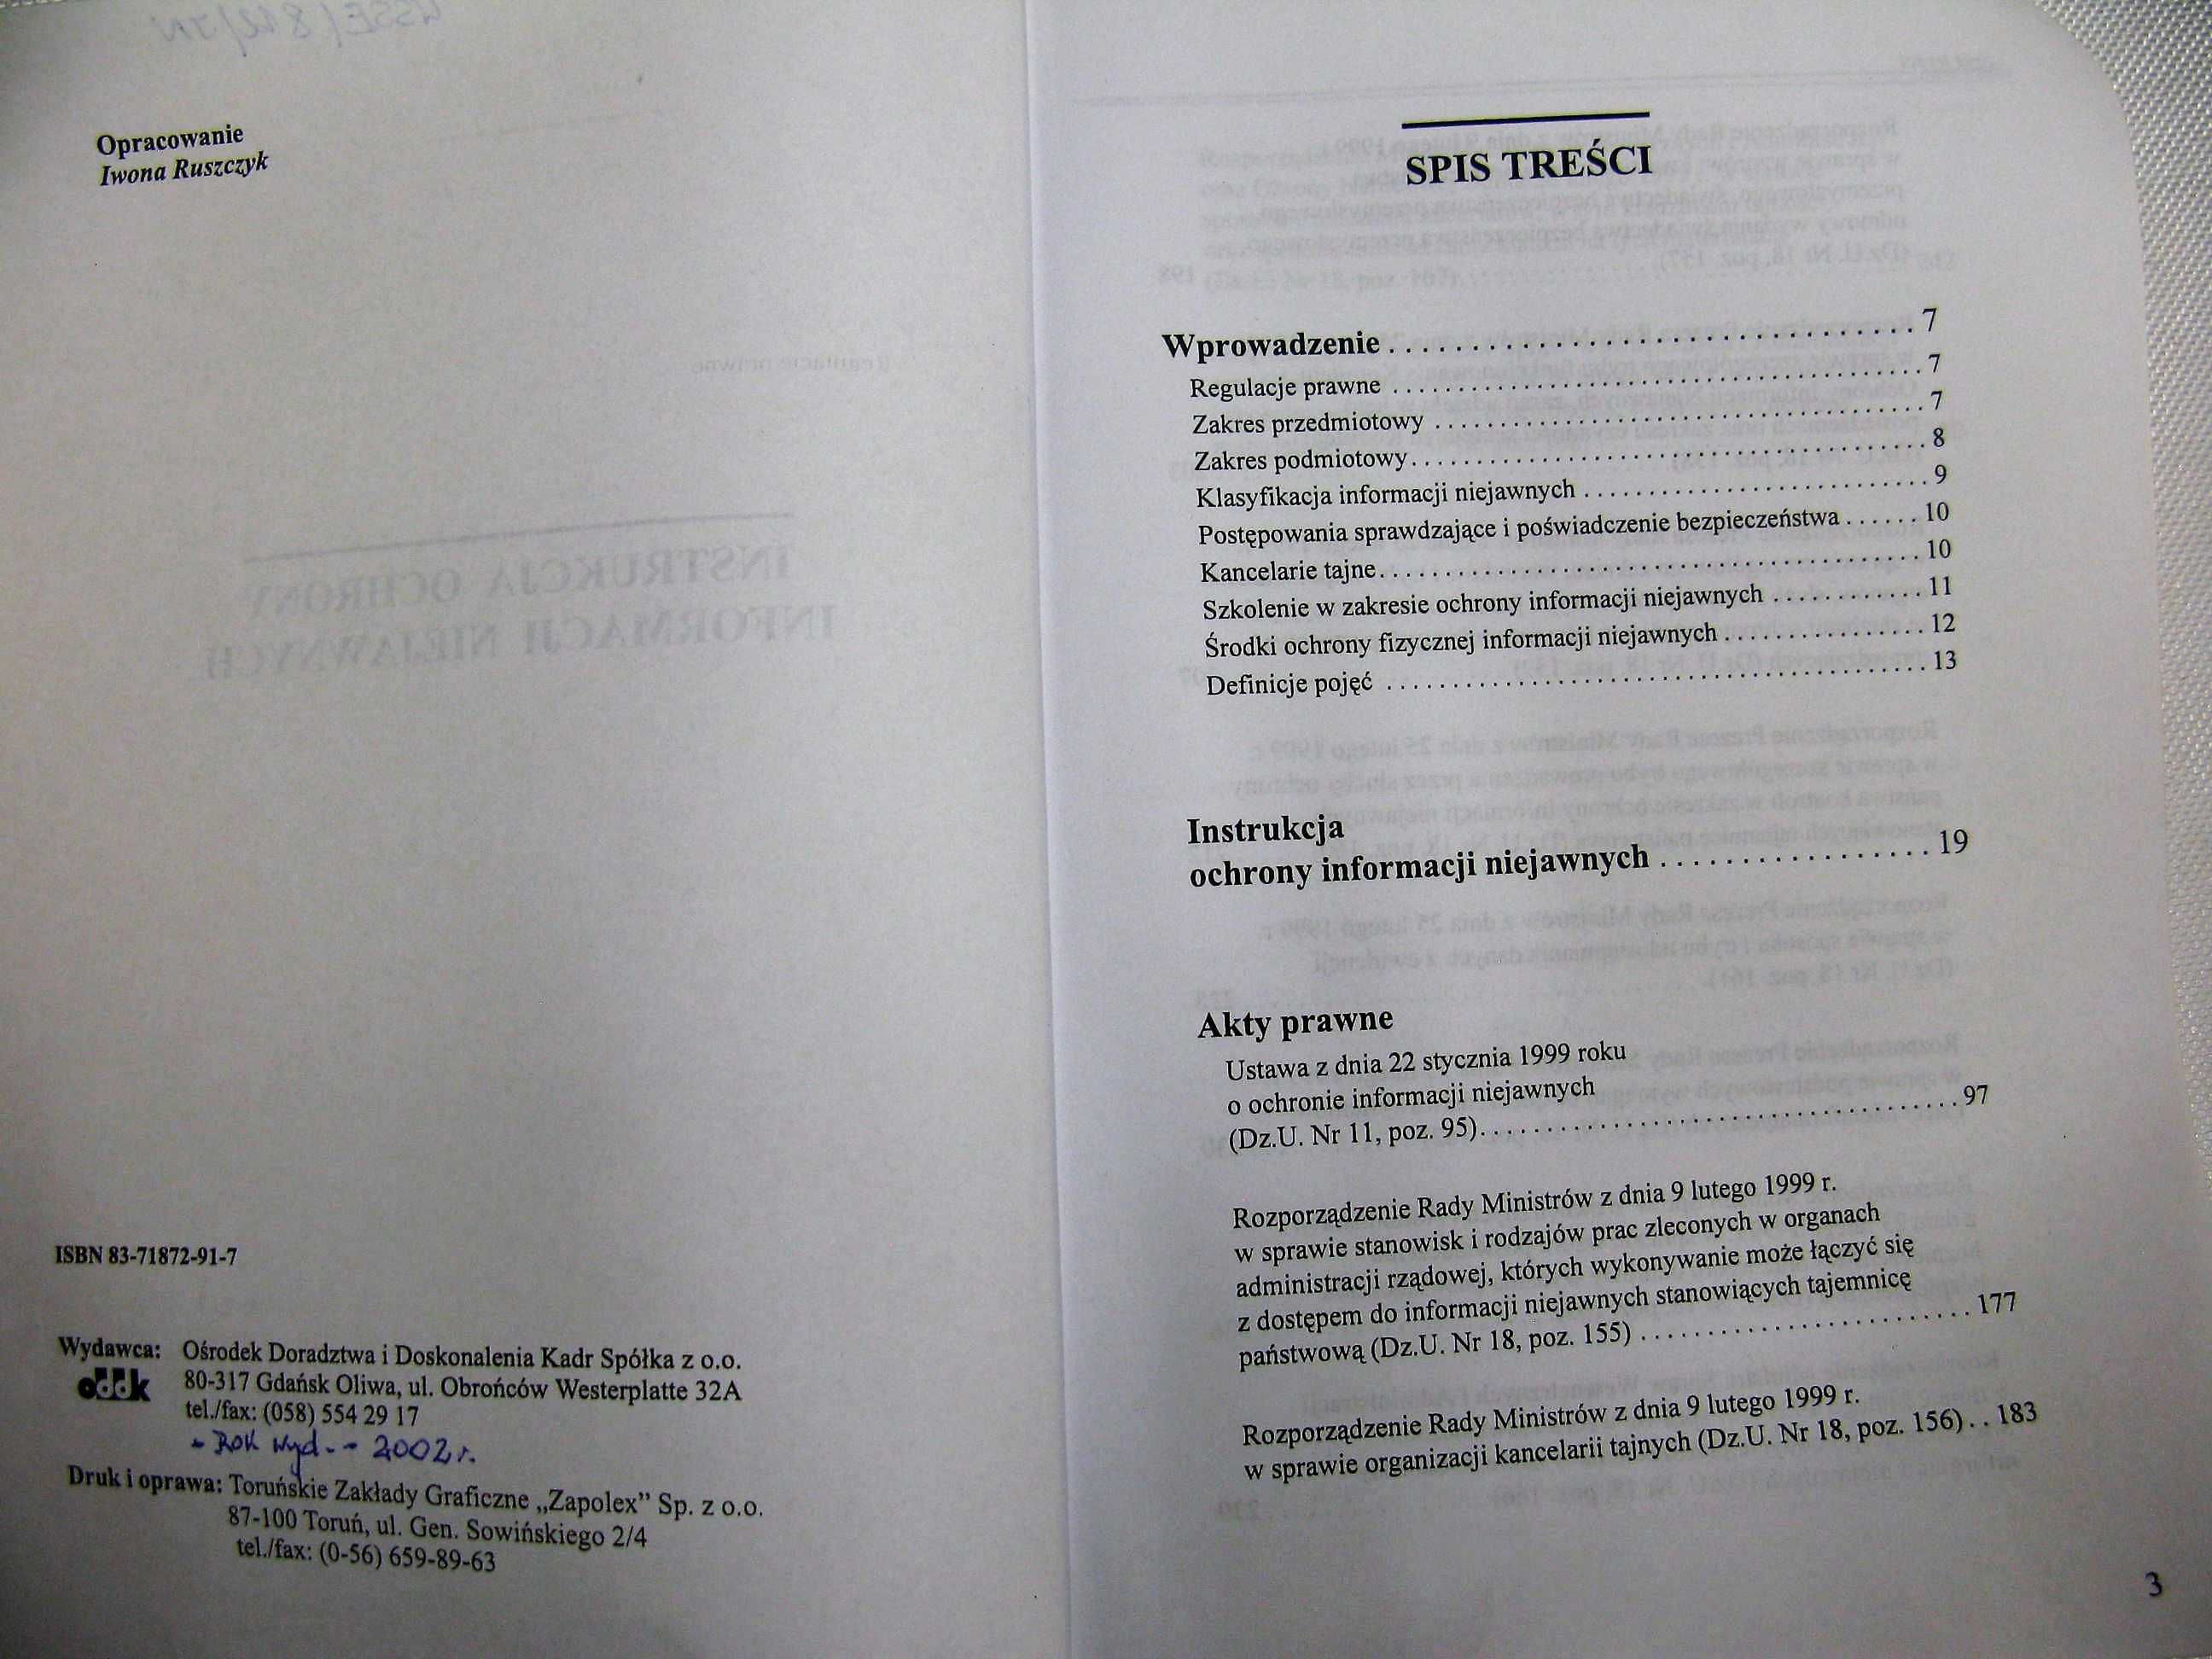 Instrukcja ochrony informacji niejawnych ODDK 2002